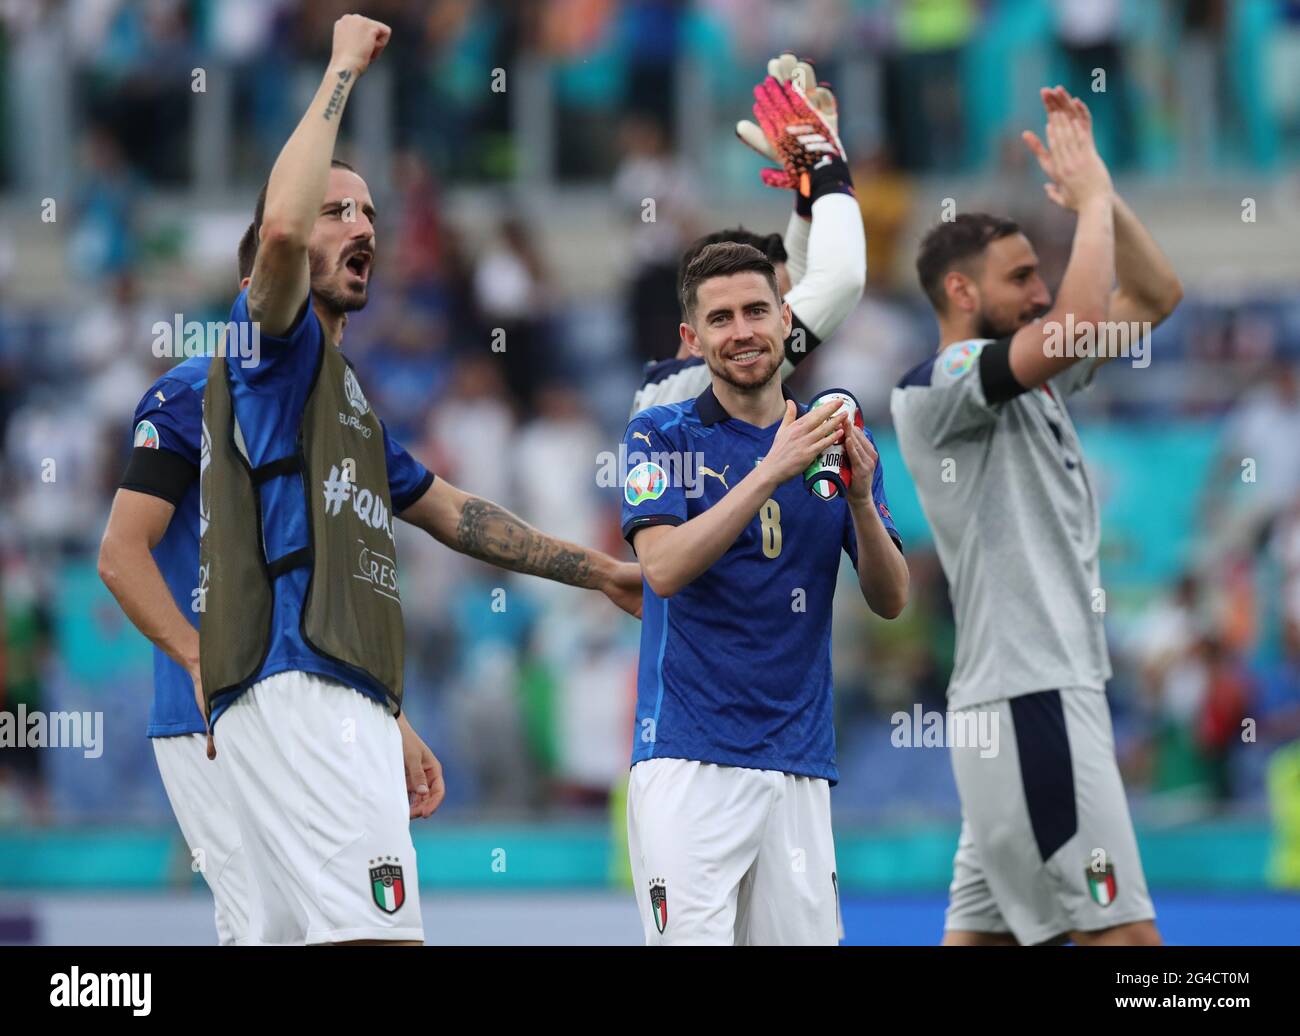 Rome. 20 juin 2021. Les joueurs italiens célèbrent la victoire après l'UEFA EURO 2020 Group UN match de football entre l'Italie et le pays de Galles au stade olympique de Rome le 20 juin 2021. Credit: Cheng Tingting/Xinhua/Alay Live News Banque D'Images